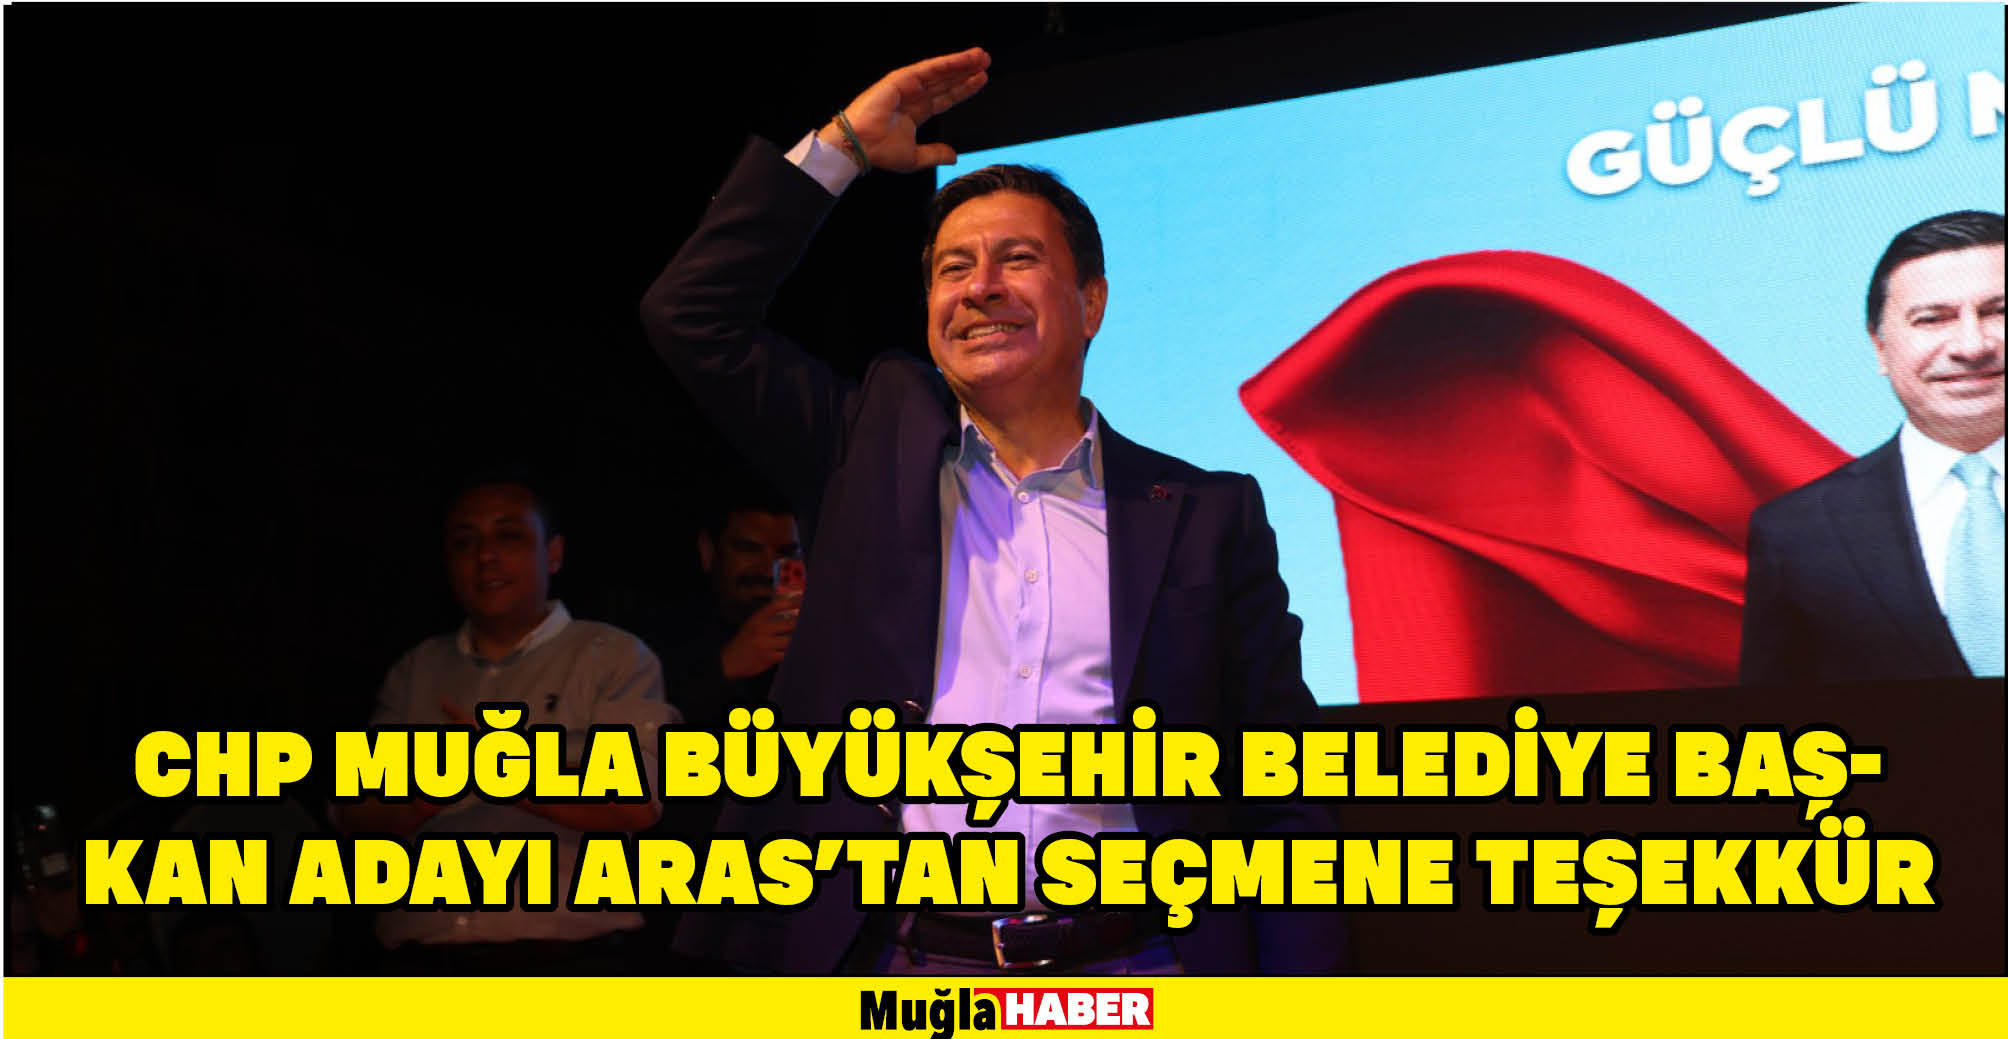 CHP Muğla Büyükşehir Belediye Başkan adayı Aras'tan seçmene teşekkür